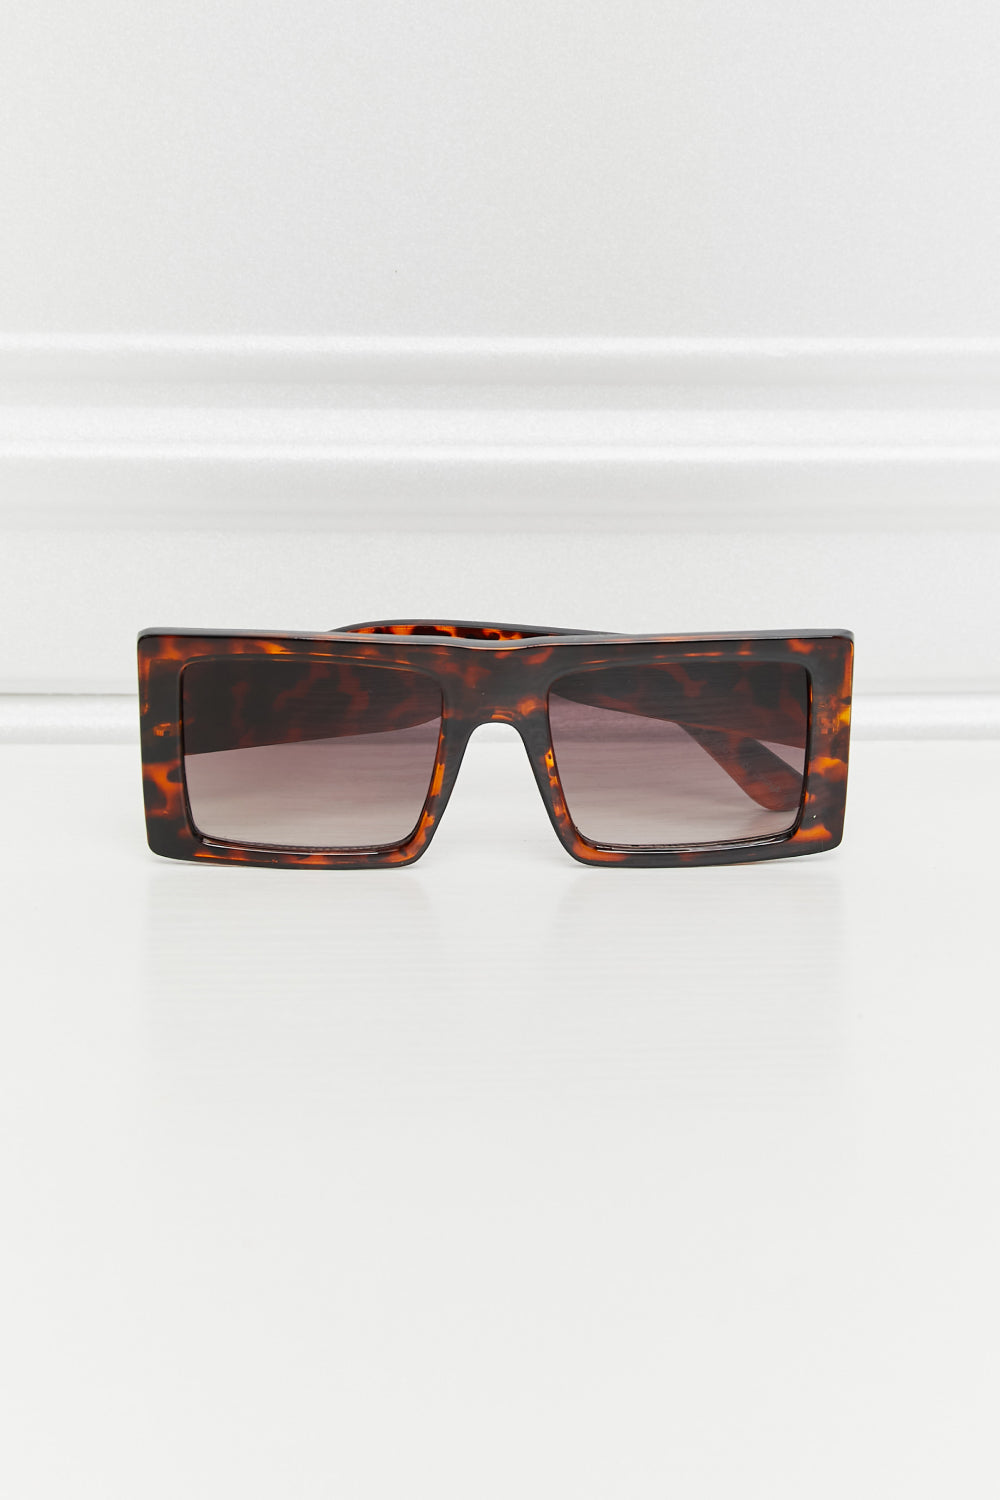 Square Polycarbonate Sunglasses One Size Sunglasses by Vim&Vigor | Vim&Vigor Boutique